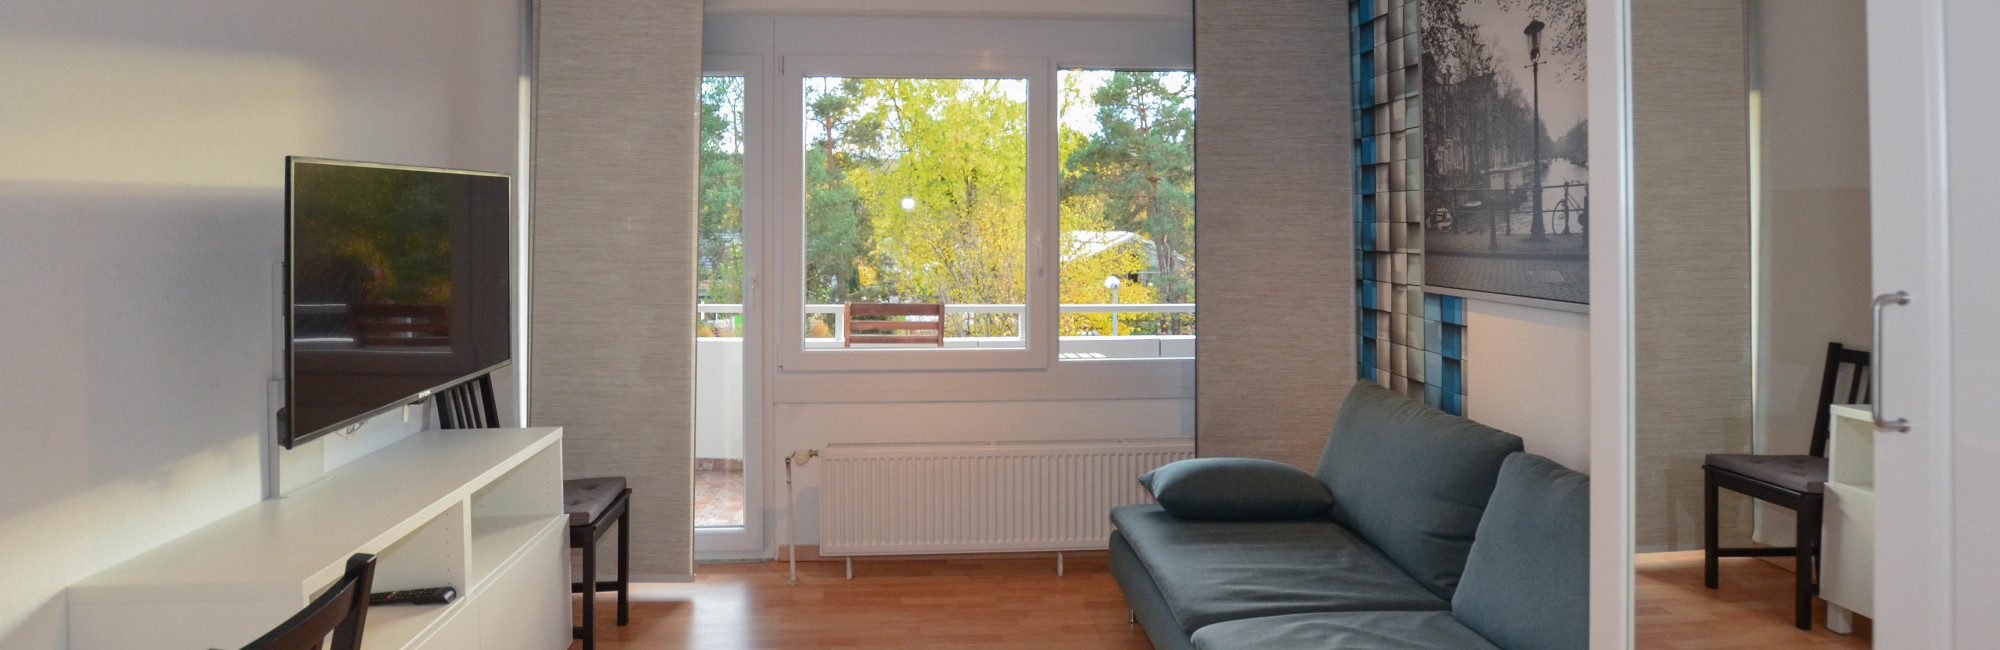 Möblierte und renovierte Wohnung in Reutlingen